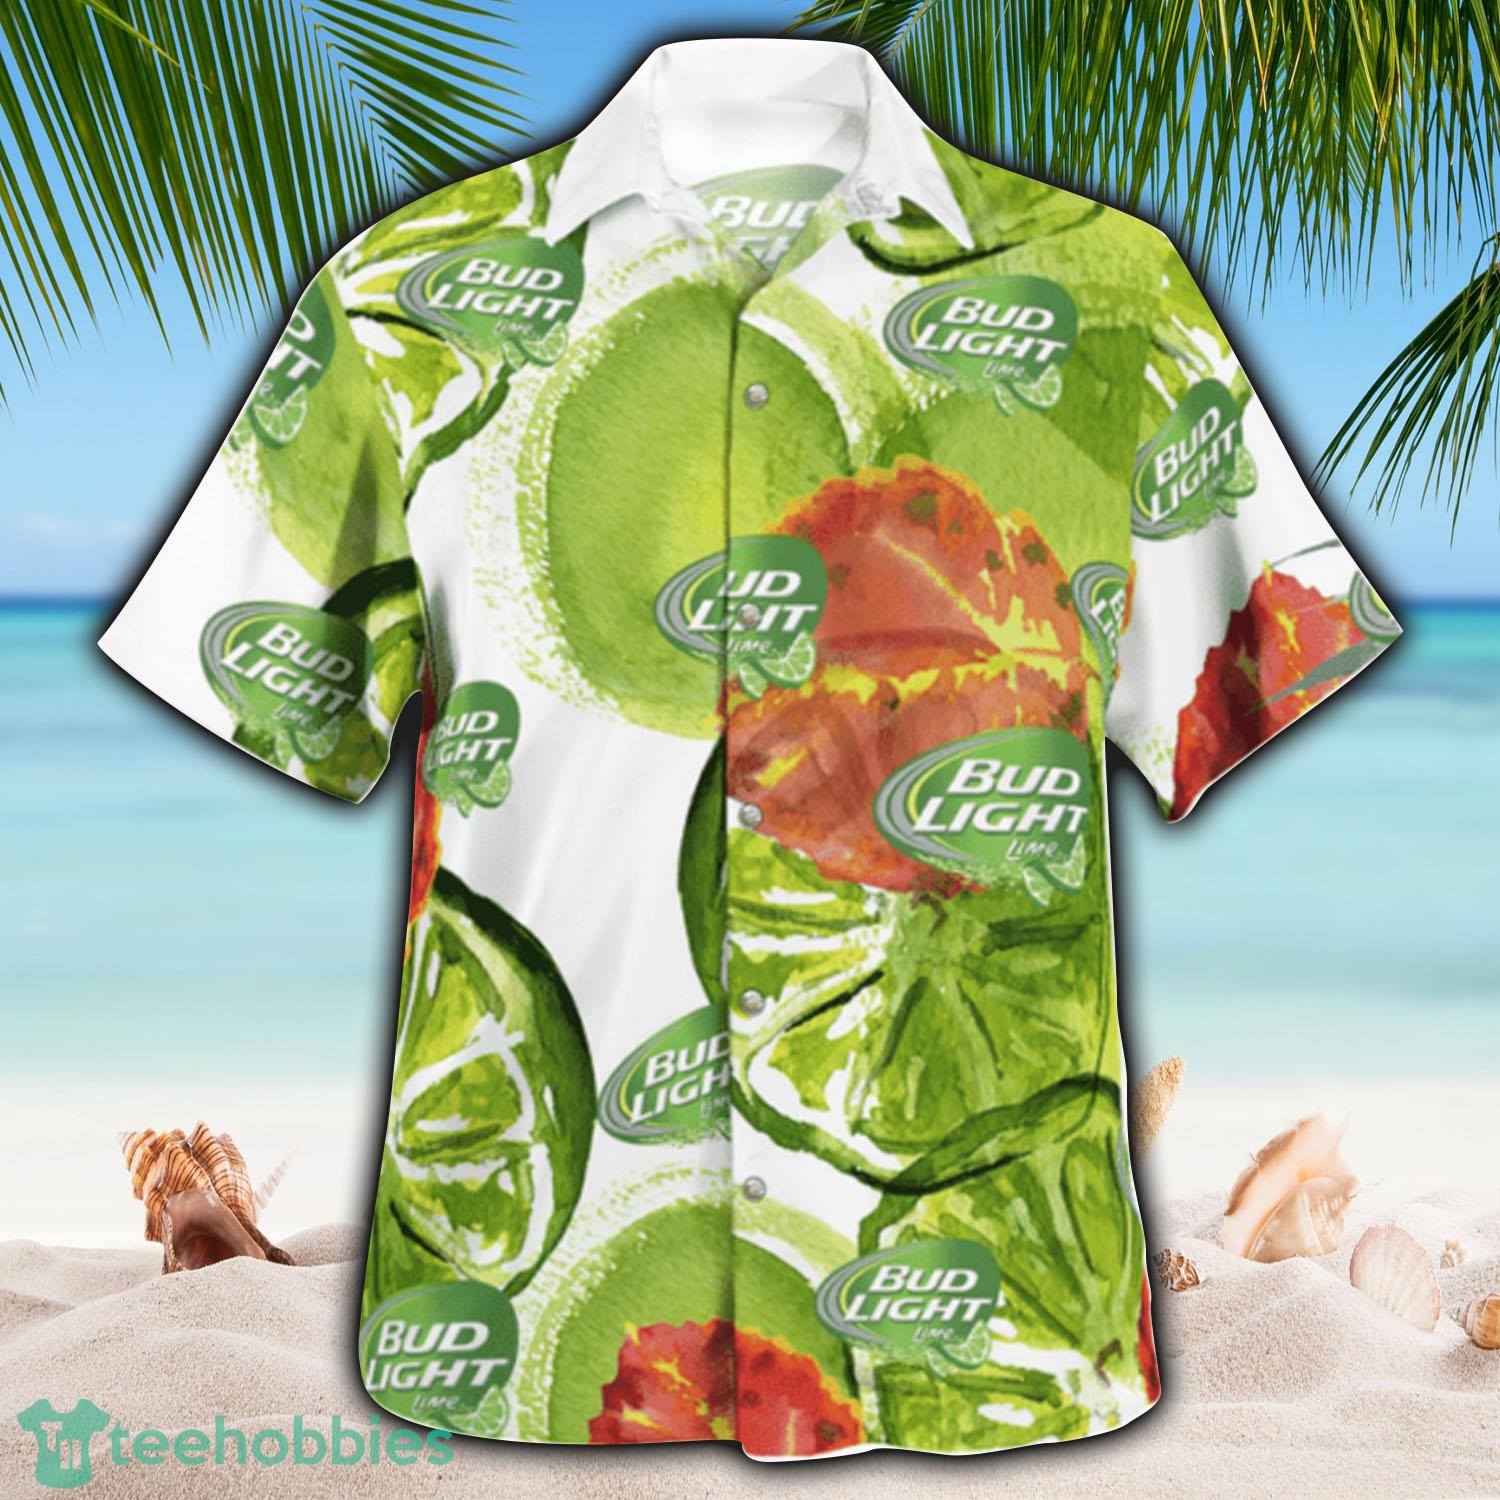 Beck's Beer Hawaiian Coconut Island Pattern Hawaiian Beer Lover Shirt,  Classic Flowers Beer Aloha Shirt - Trendy Aloha